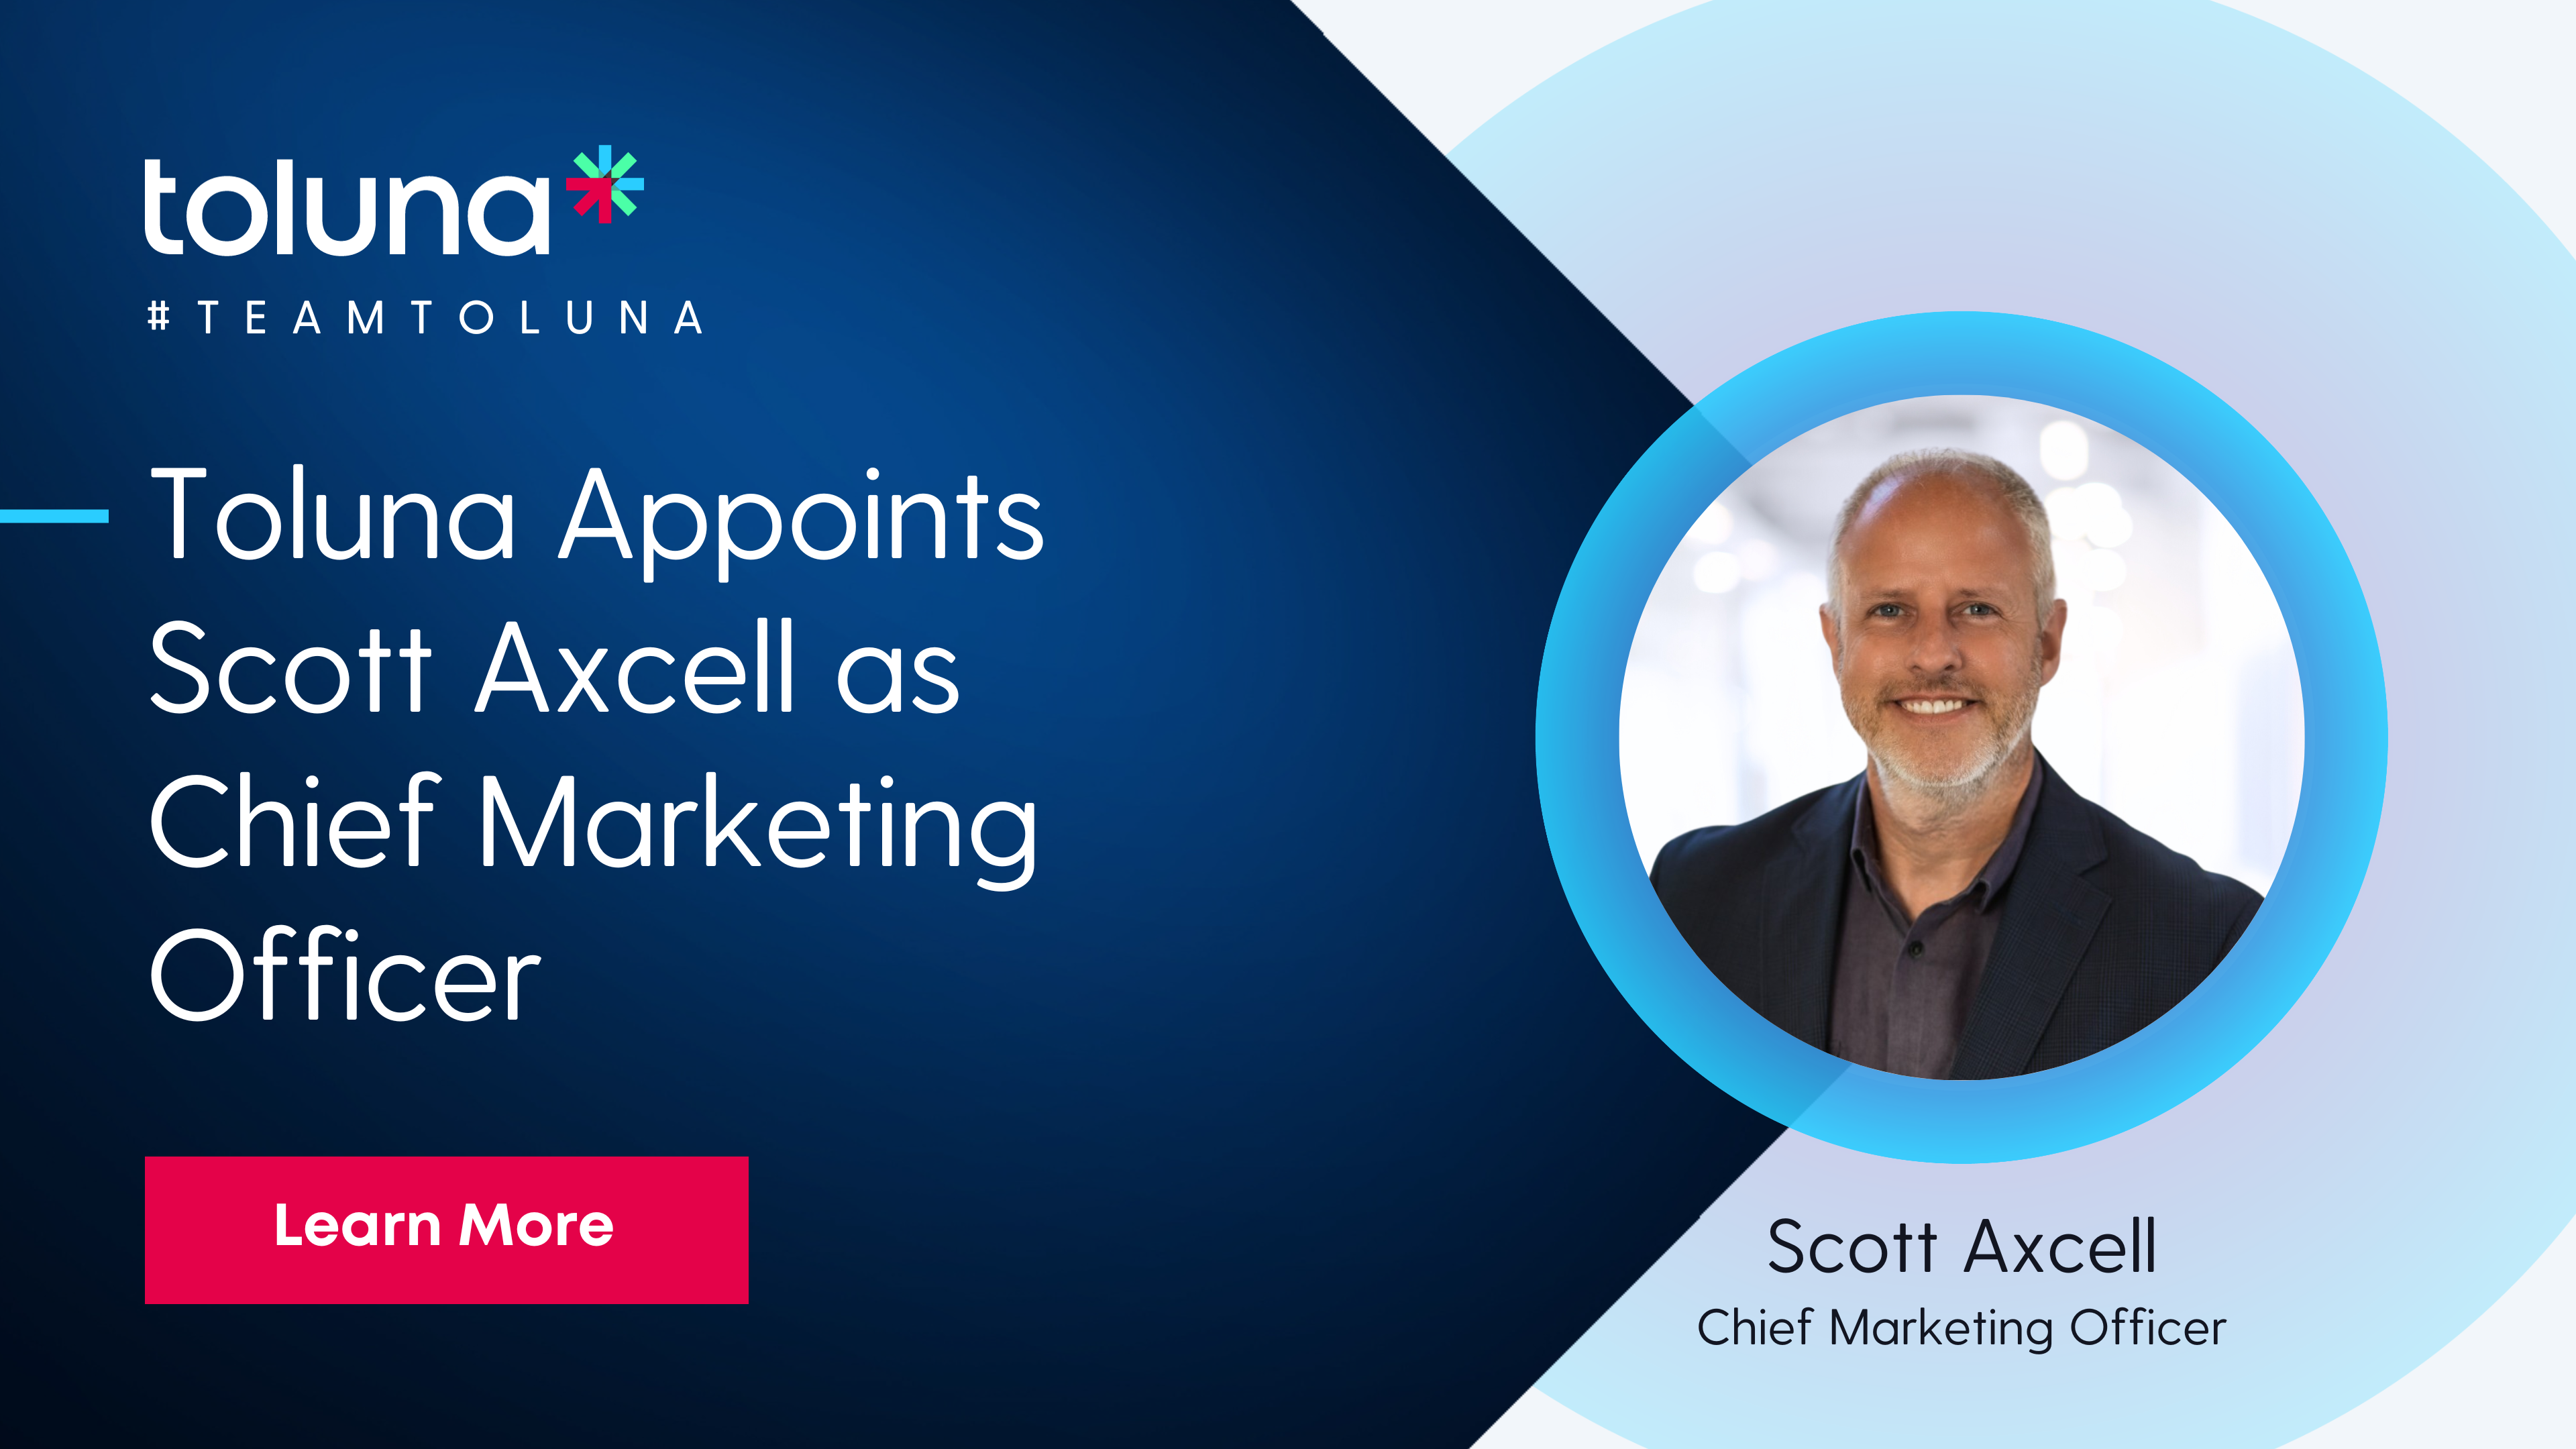 Toluna nomeia Scott Axcell como Chief Marketing Officer